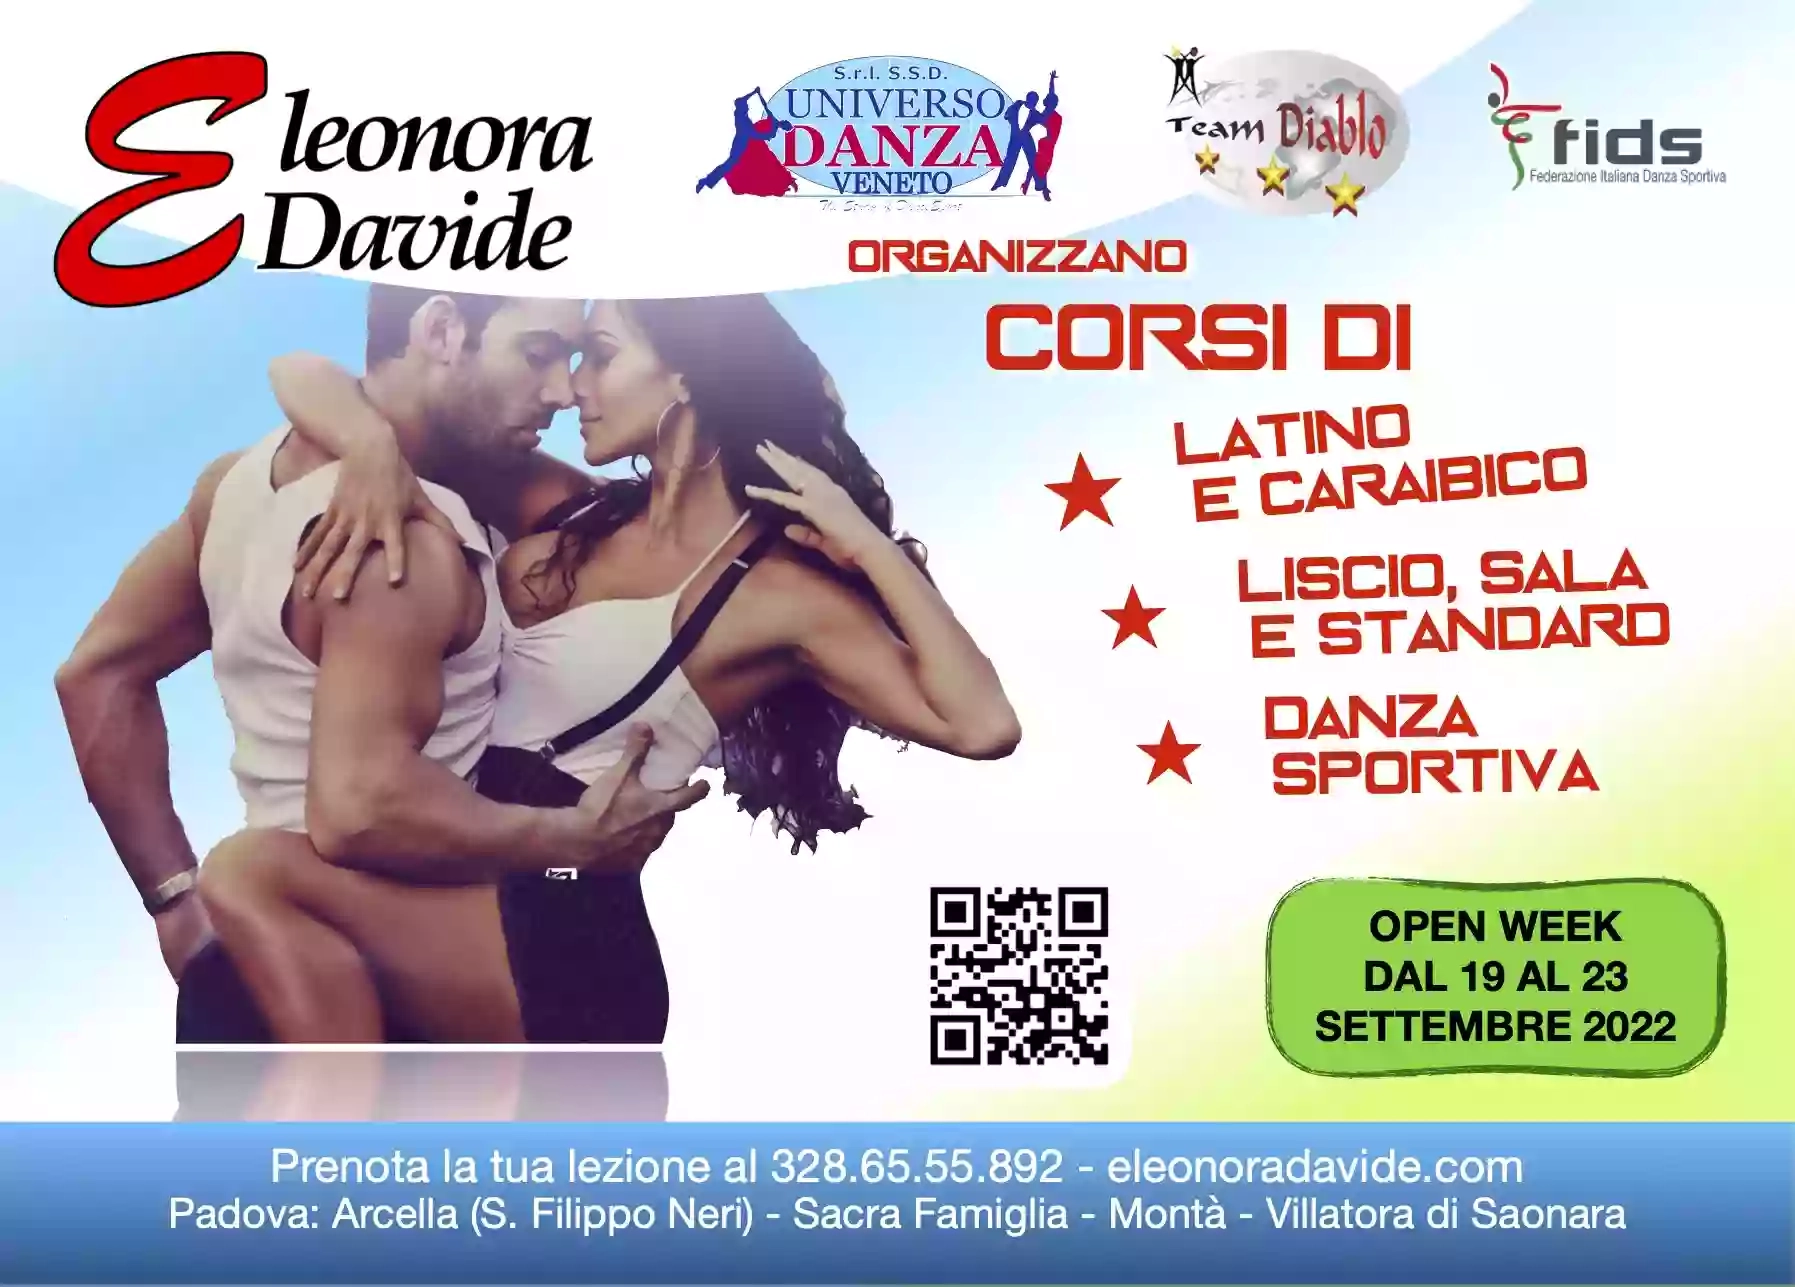 Eleonora e Davide - Universo Danza ssd - Balli Latino Americani, Liscio, Standard, Caraibici